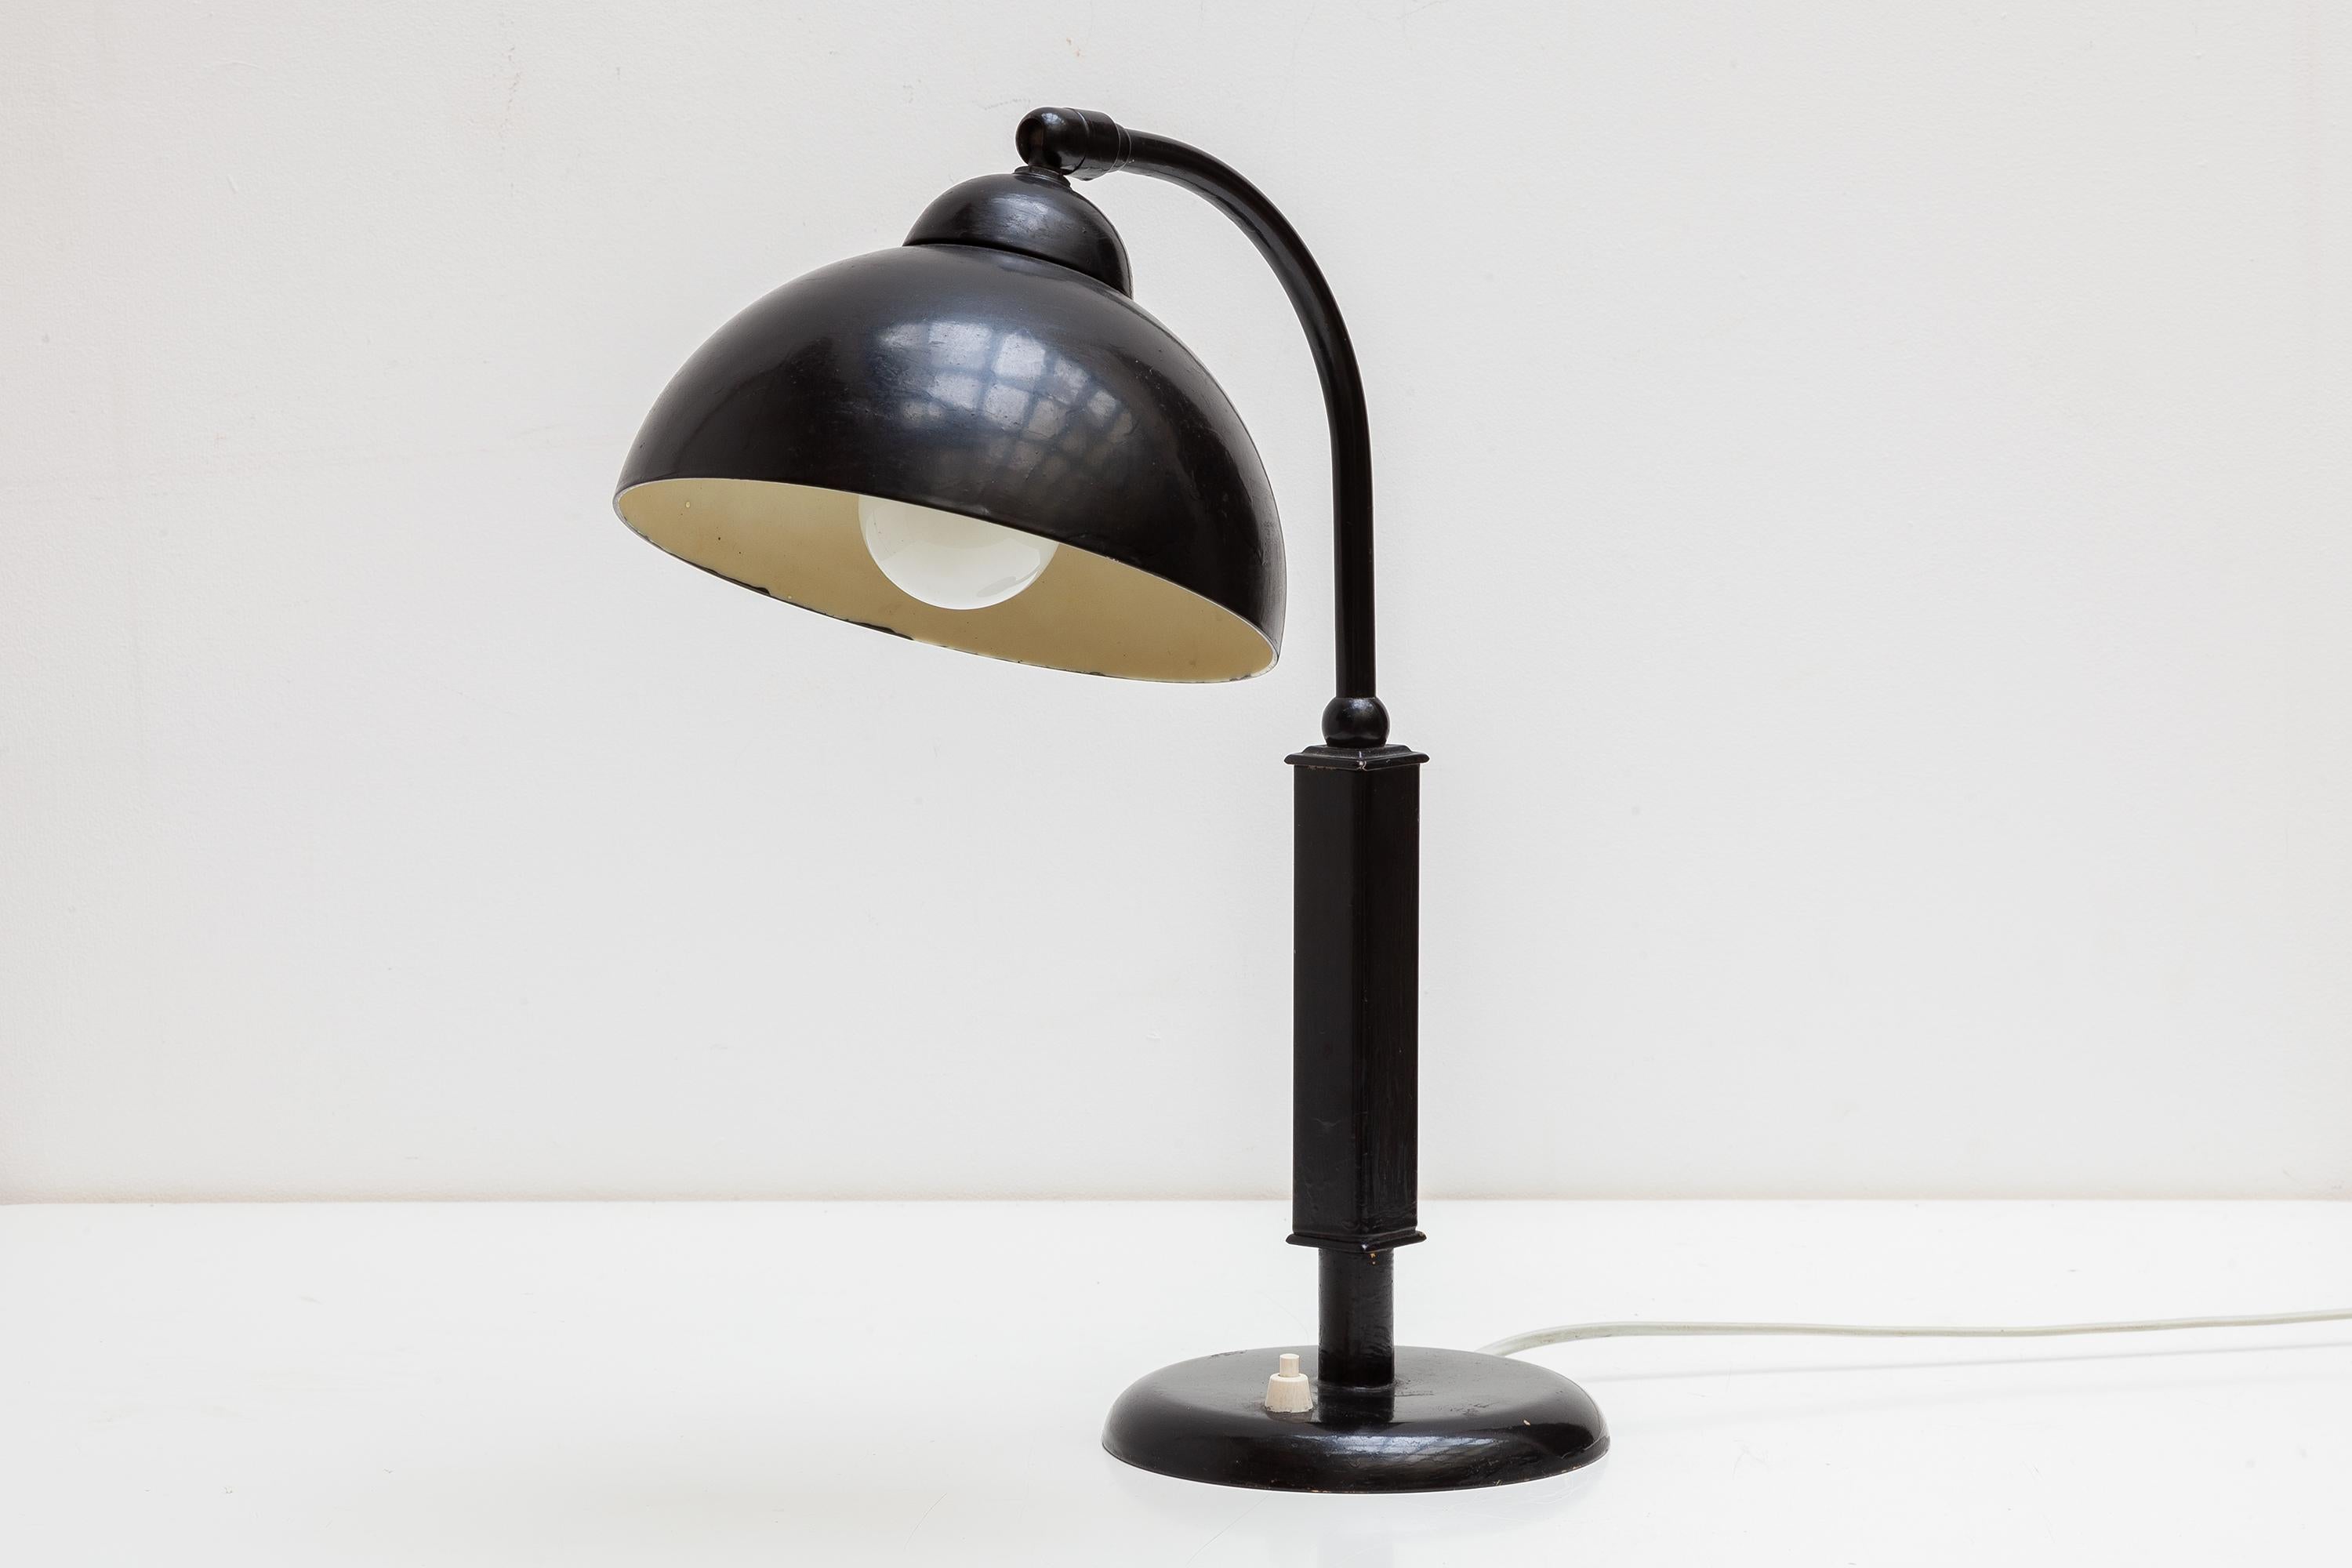 Bauhaus desk lamp in enameled black metal and bakelite shade. Adjustable swan neck. Lit by 1 bulb.Christian Dell Desk Lamp By Kaiser Idell Bauhaus, 1930s Design, 1934.Germany.